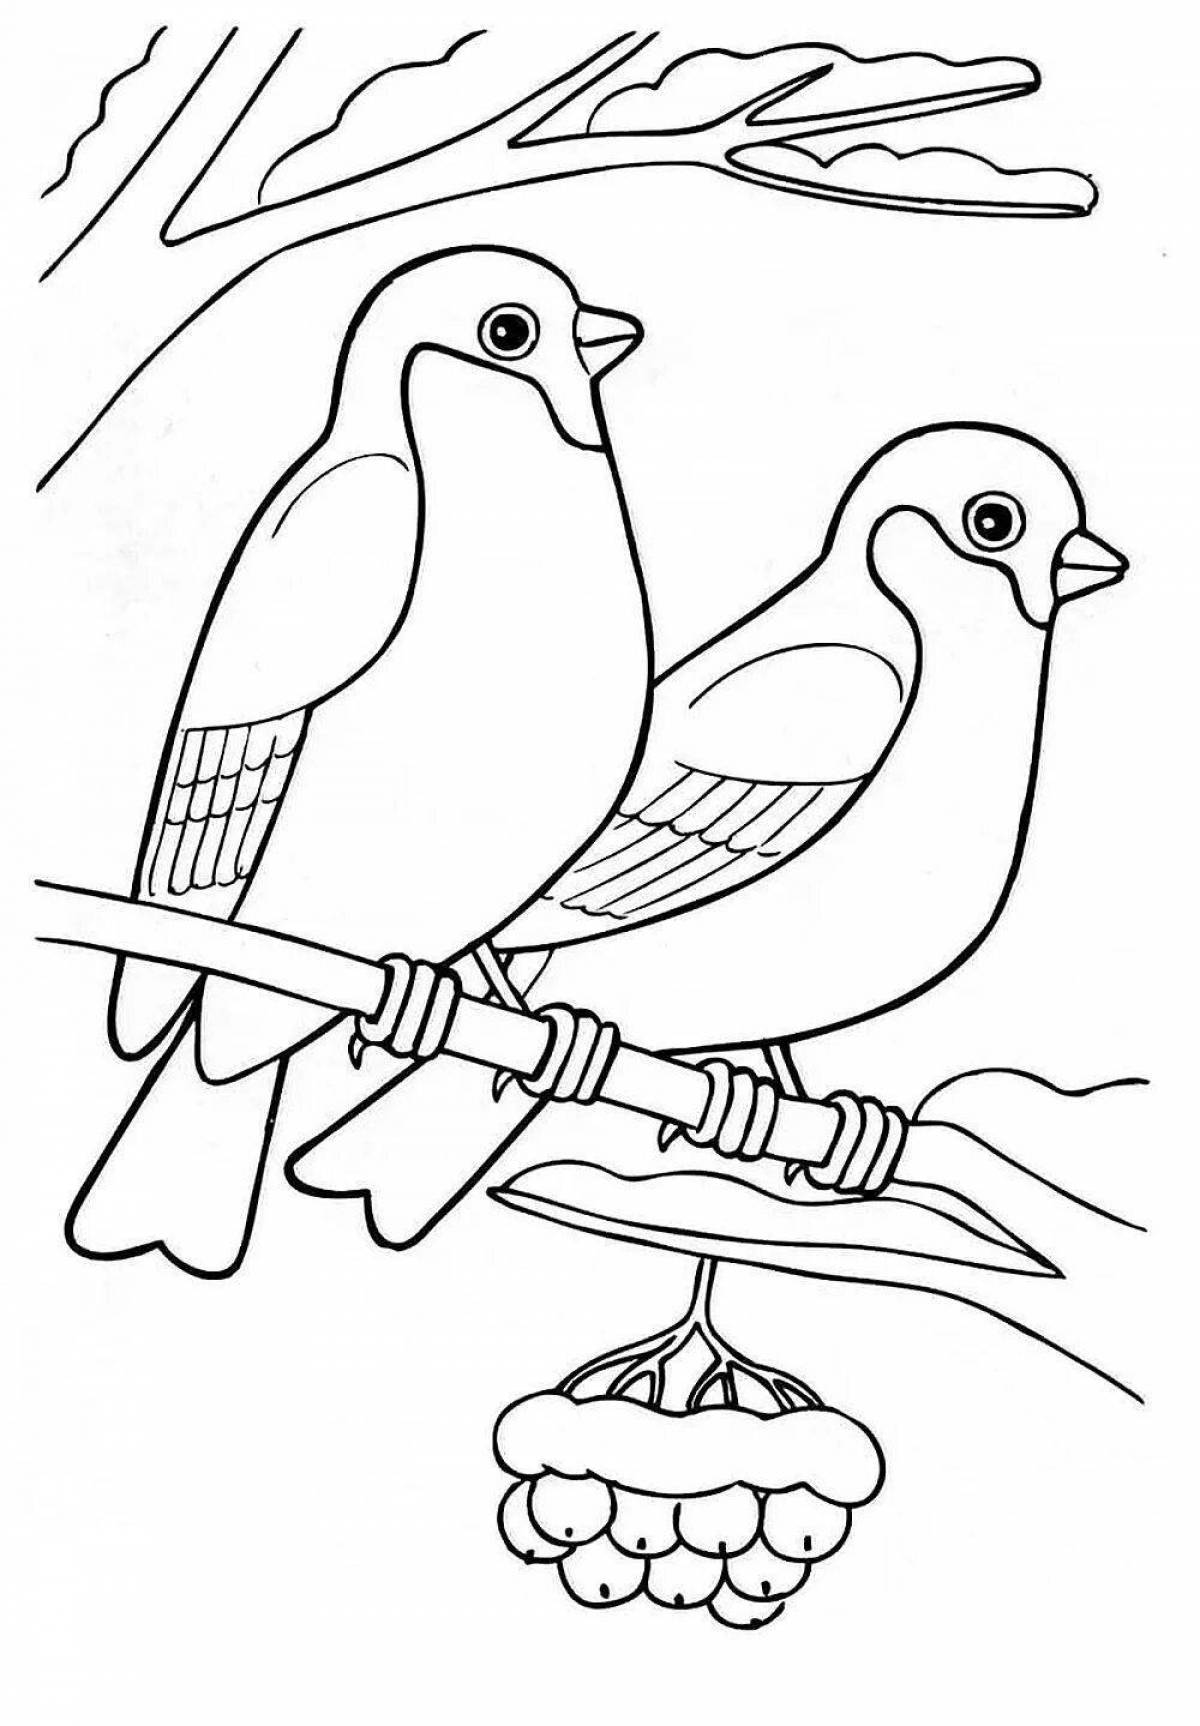 Coloring page bizarre wintering birds